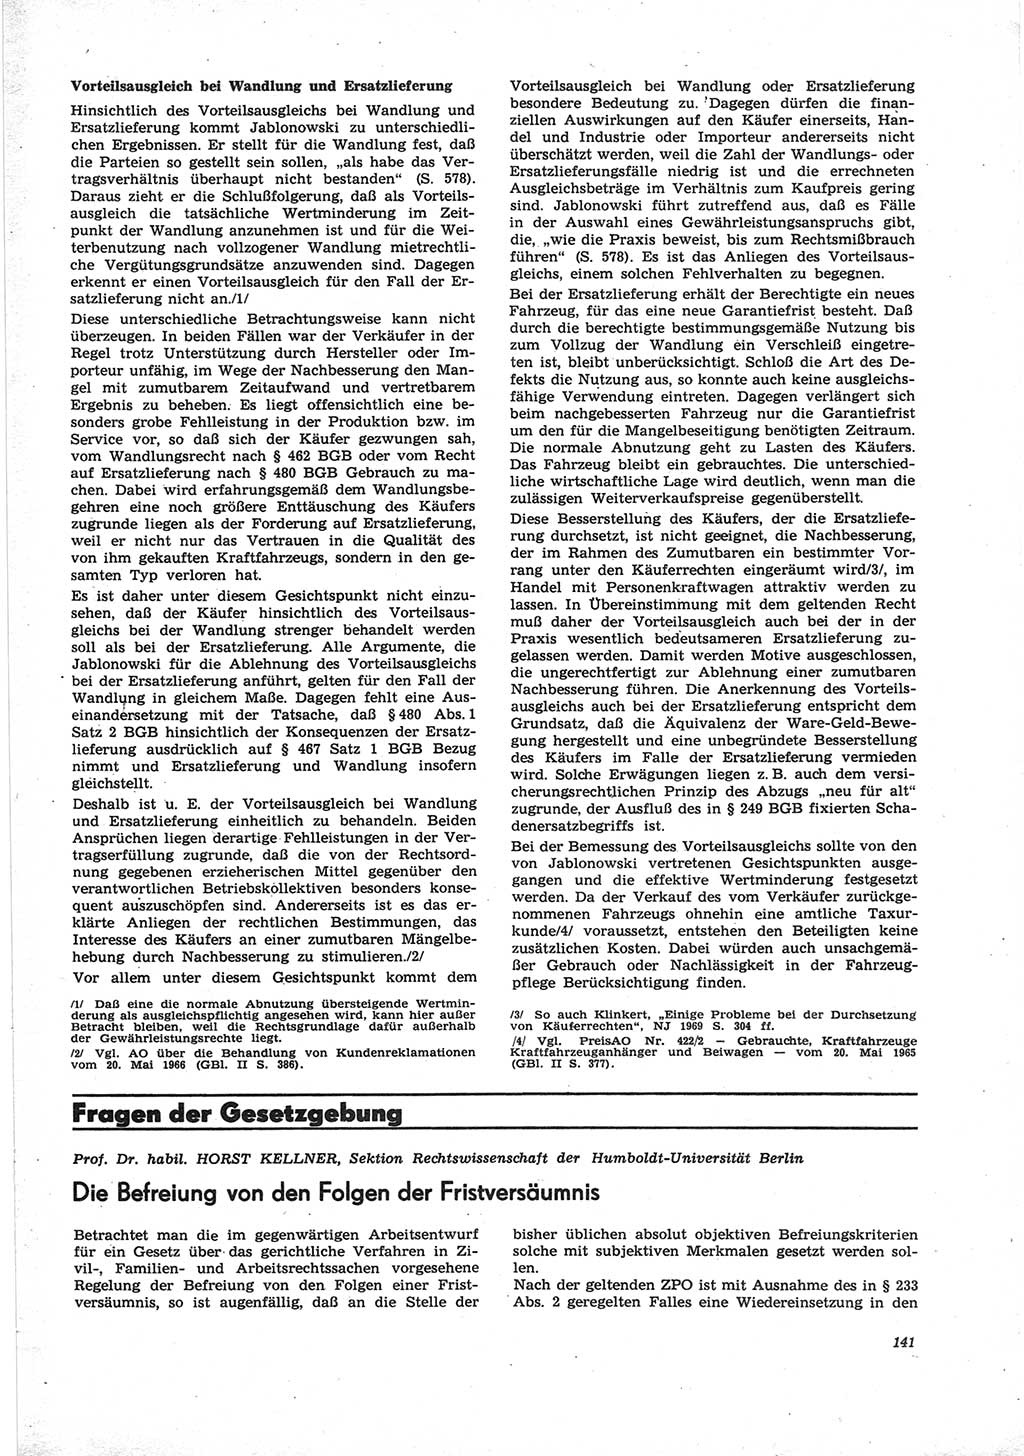 Neue Justiz (NJ), Zeitschrift für Recht und Rechtswissenschaft [Deutsche Demokratische Republik (DDR)], 25. Jahrgang 1971, Seite 141 (NJ DDR 1971, S. 141)